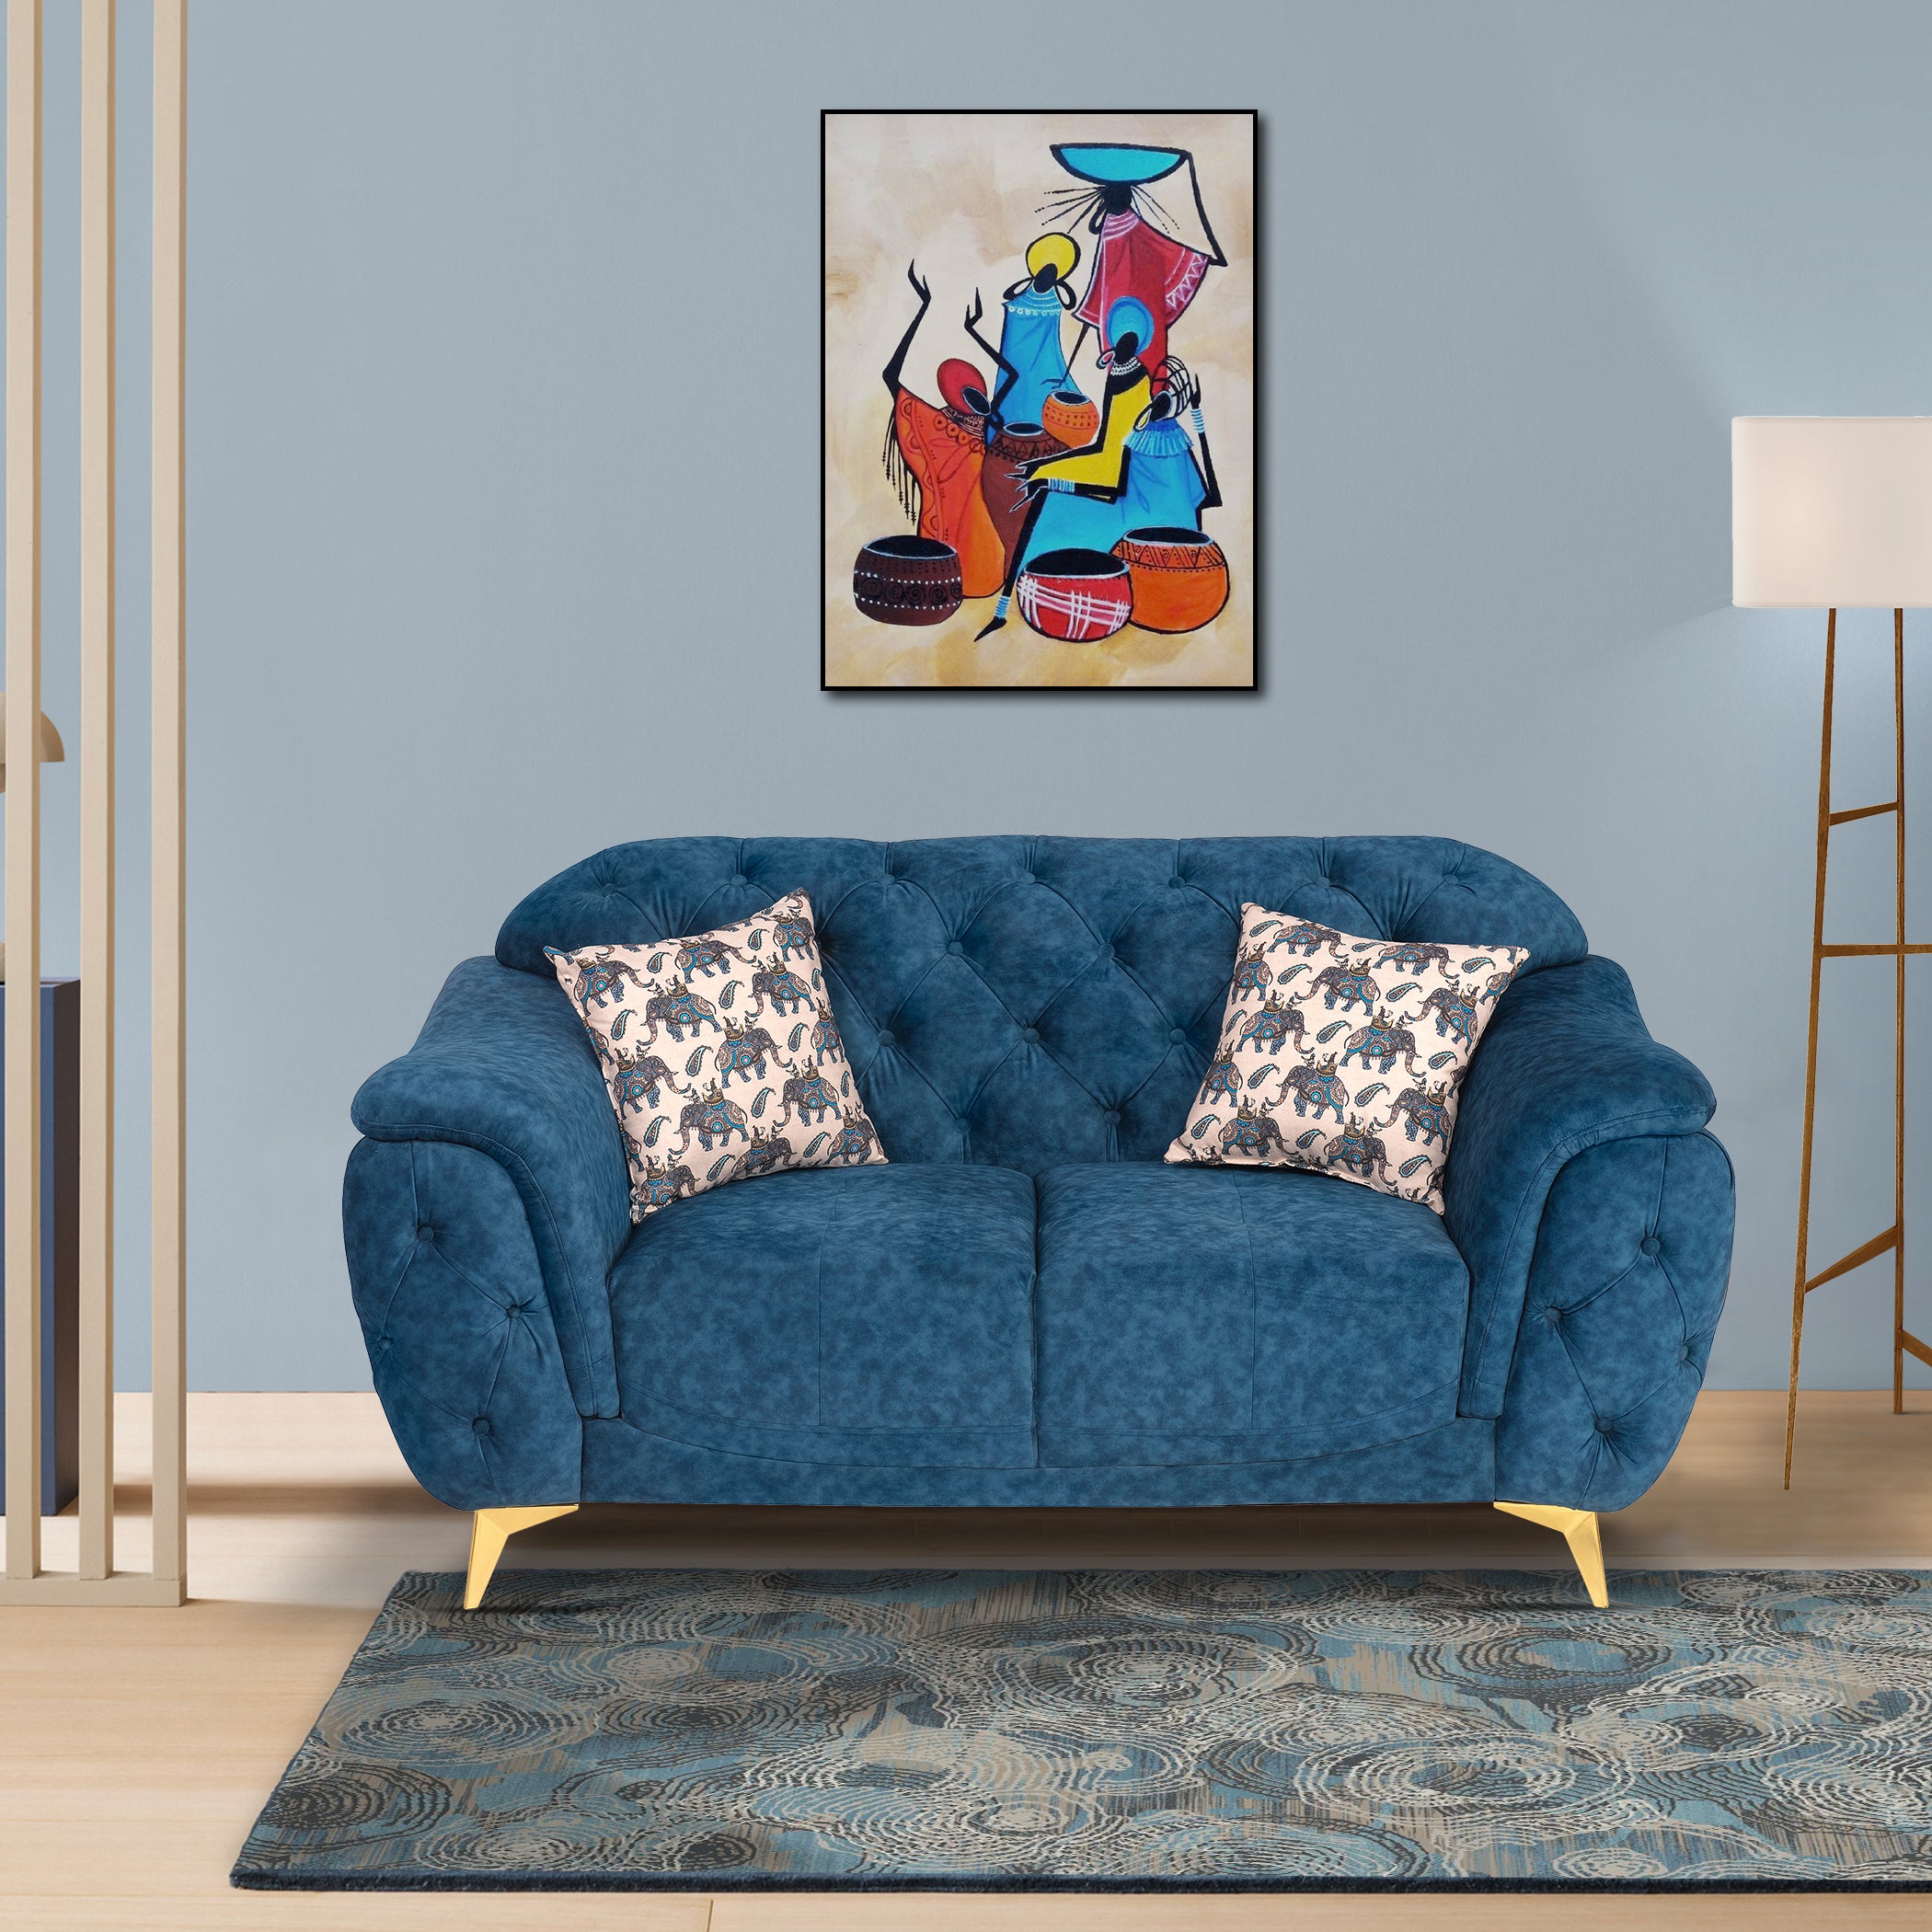 Denmark TexturedBlue 2S Sofa by Zorin Zorin